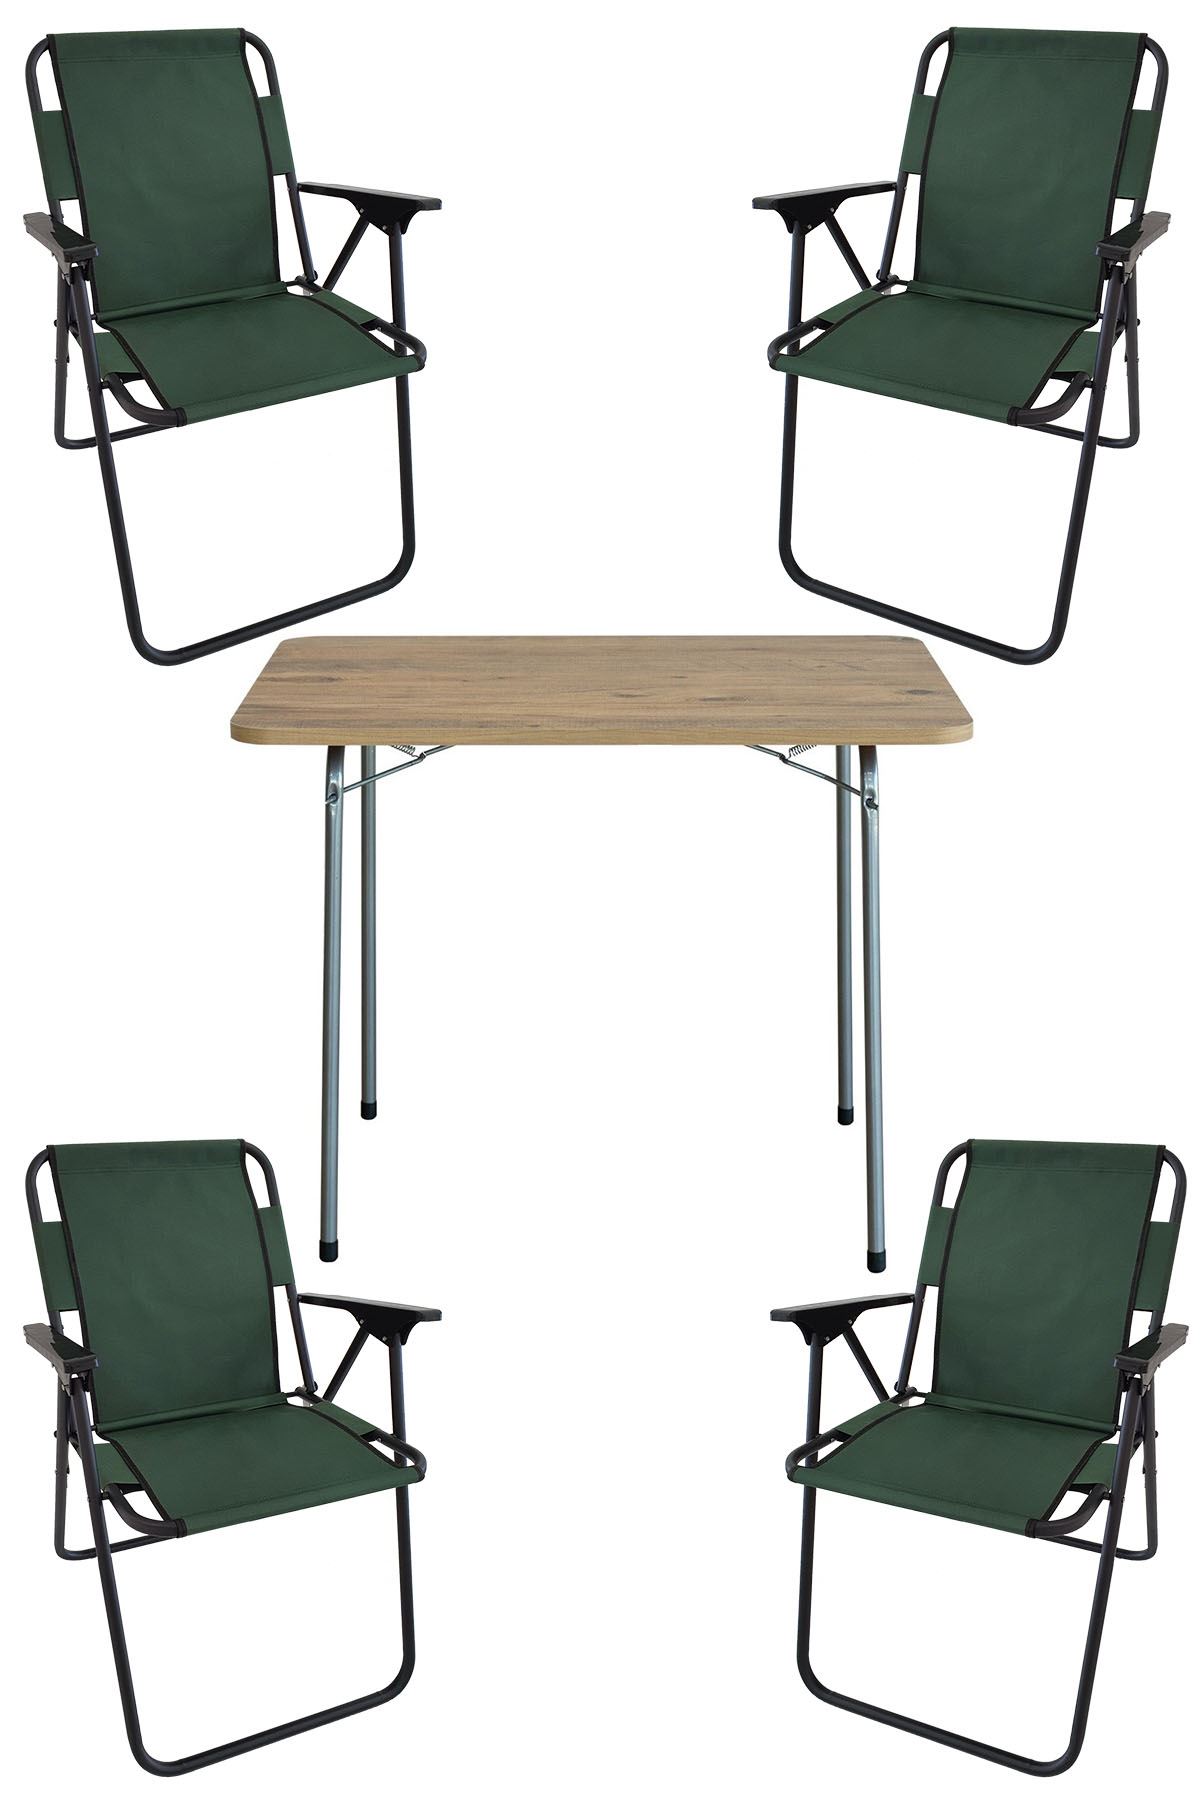 Bofigo 60X80 Çam Desenli Katlanır Masa + 4 Adet Katlanır Sandalye Kamp Seti Bahçe Takımı Yeşil